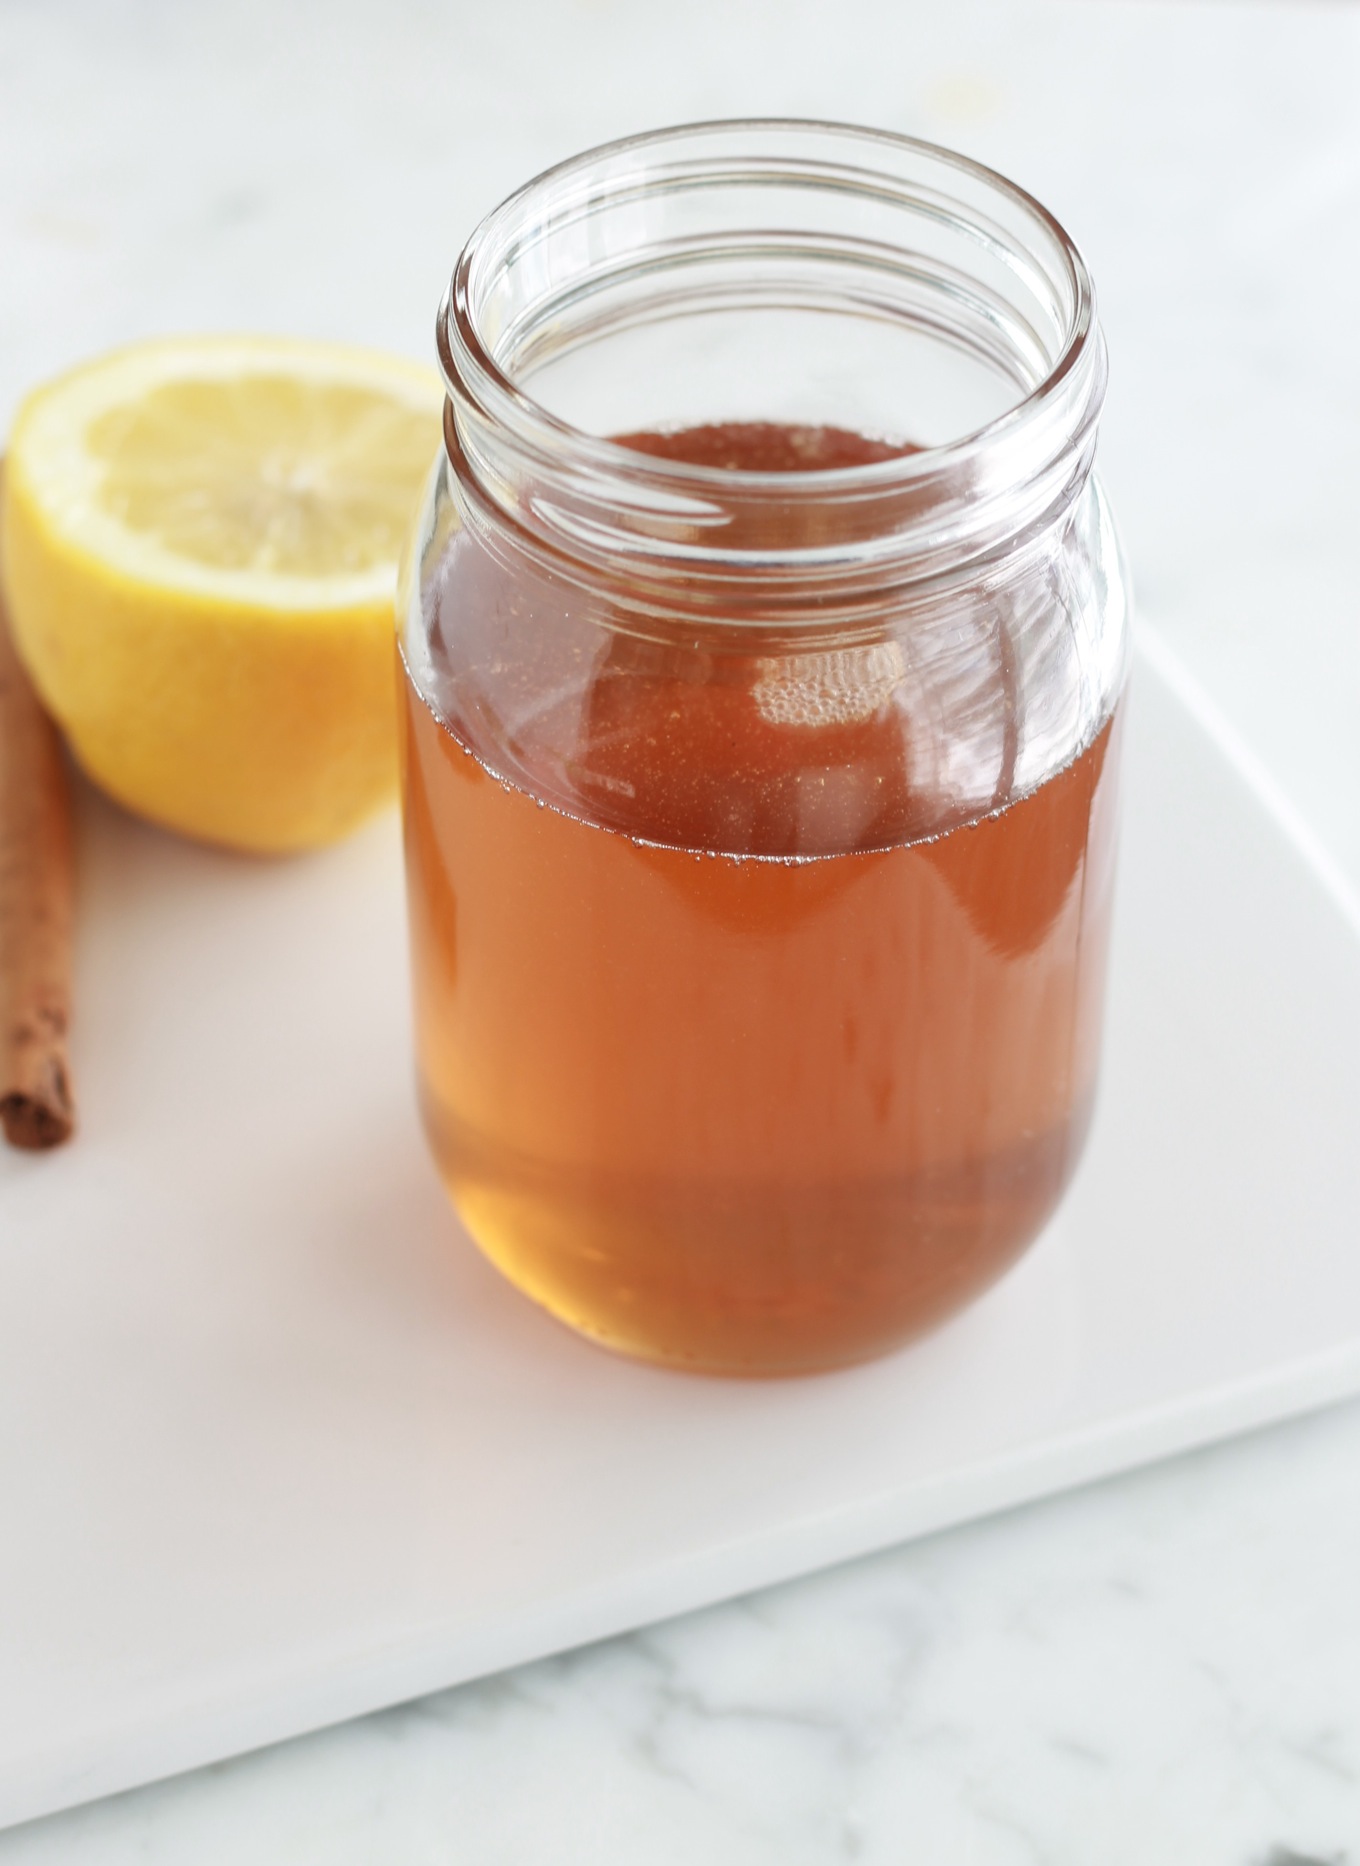 Ce sirop de sucre, ou faux miel, peut remplacer le miel dans les pâtisseries orientales. Il est moins cher et vous pouvez l'aromatiser selon votre goût. / cuisineculinaire.com